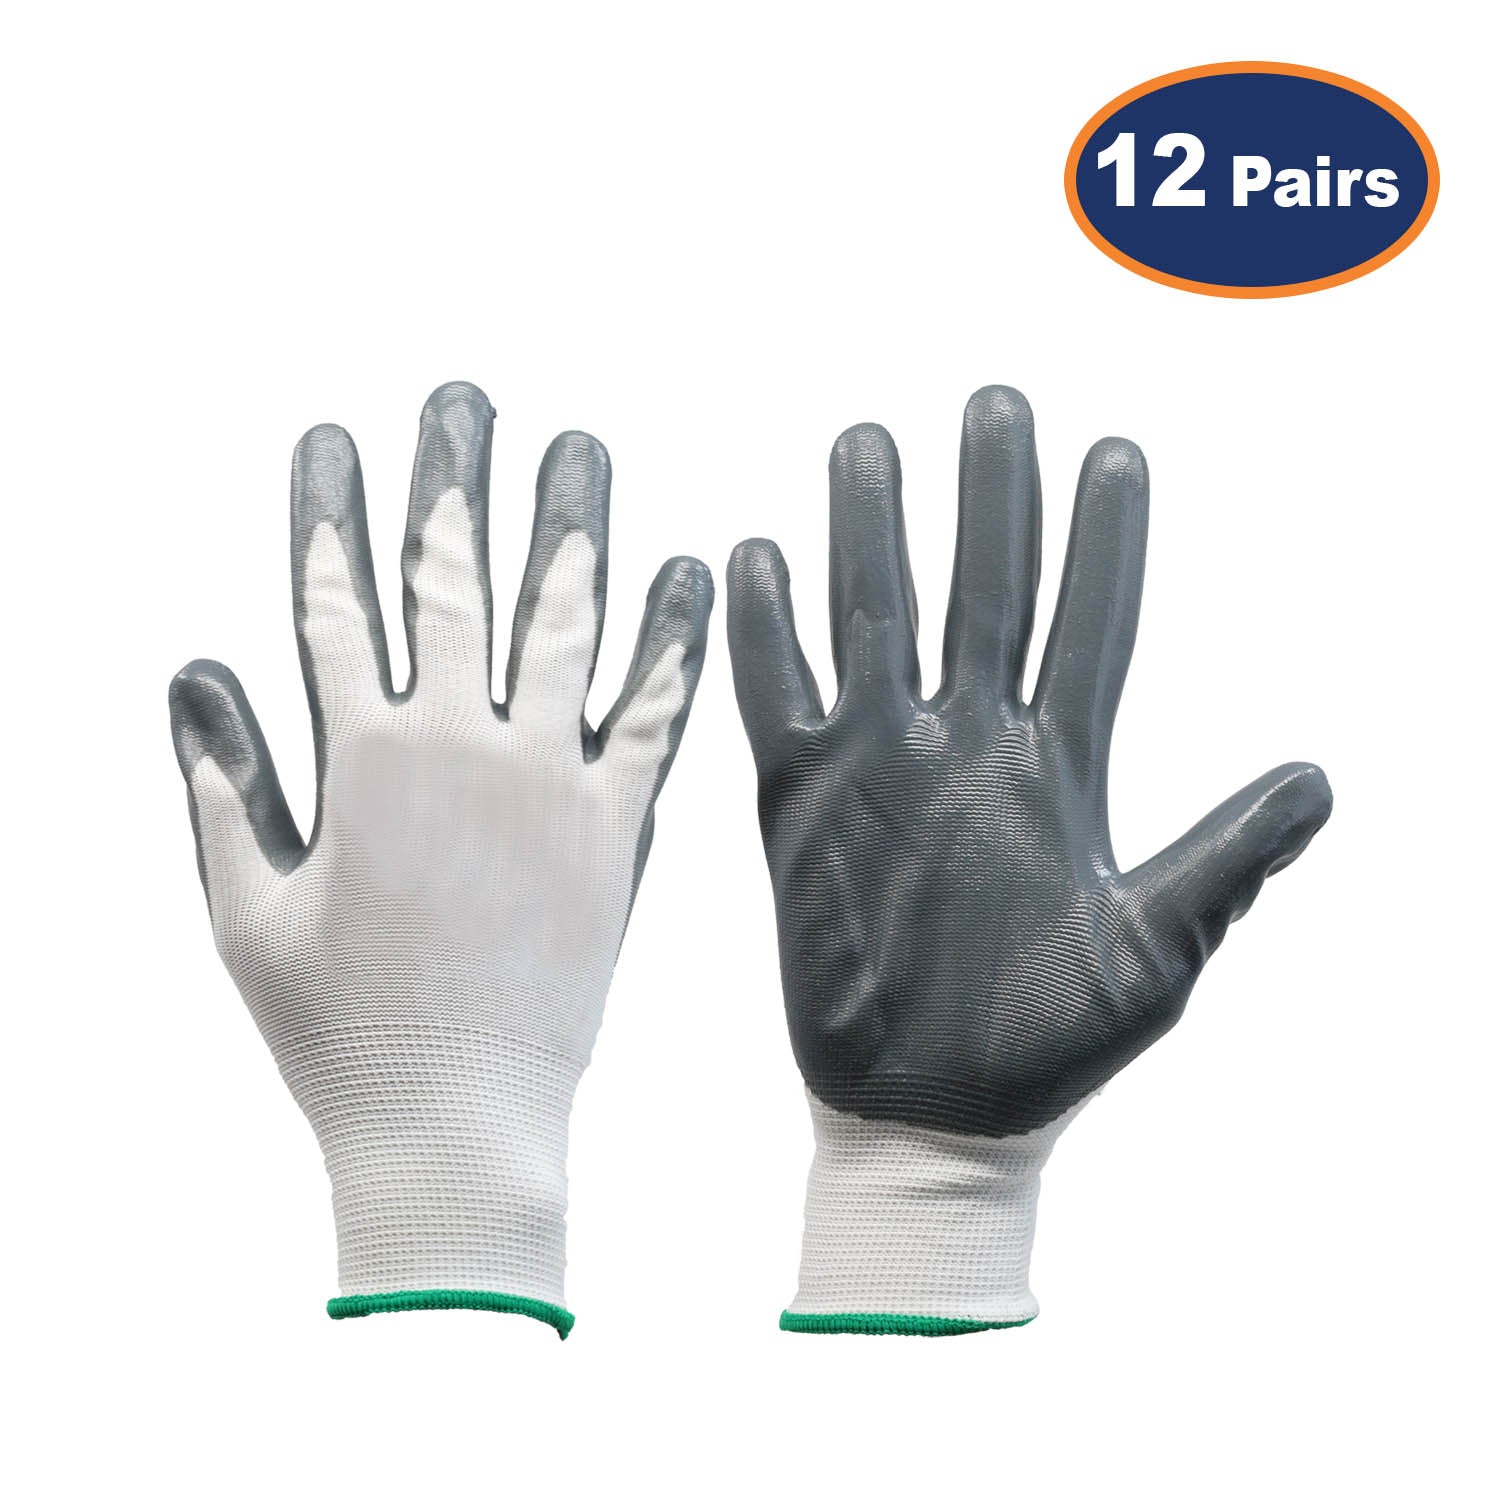 12Pcs Small Size Grey/White Nitrile Flexi Grip Work Gloves